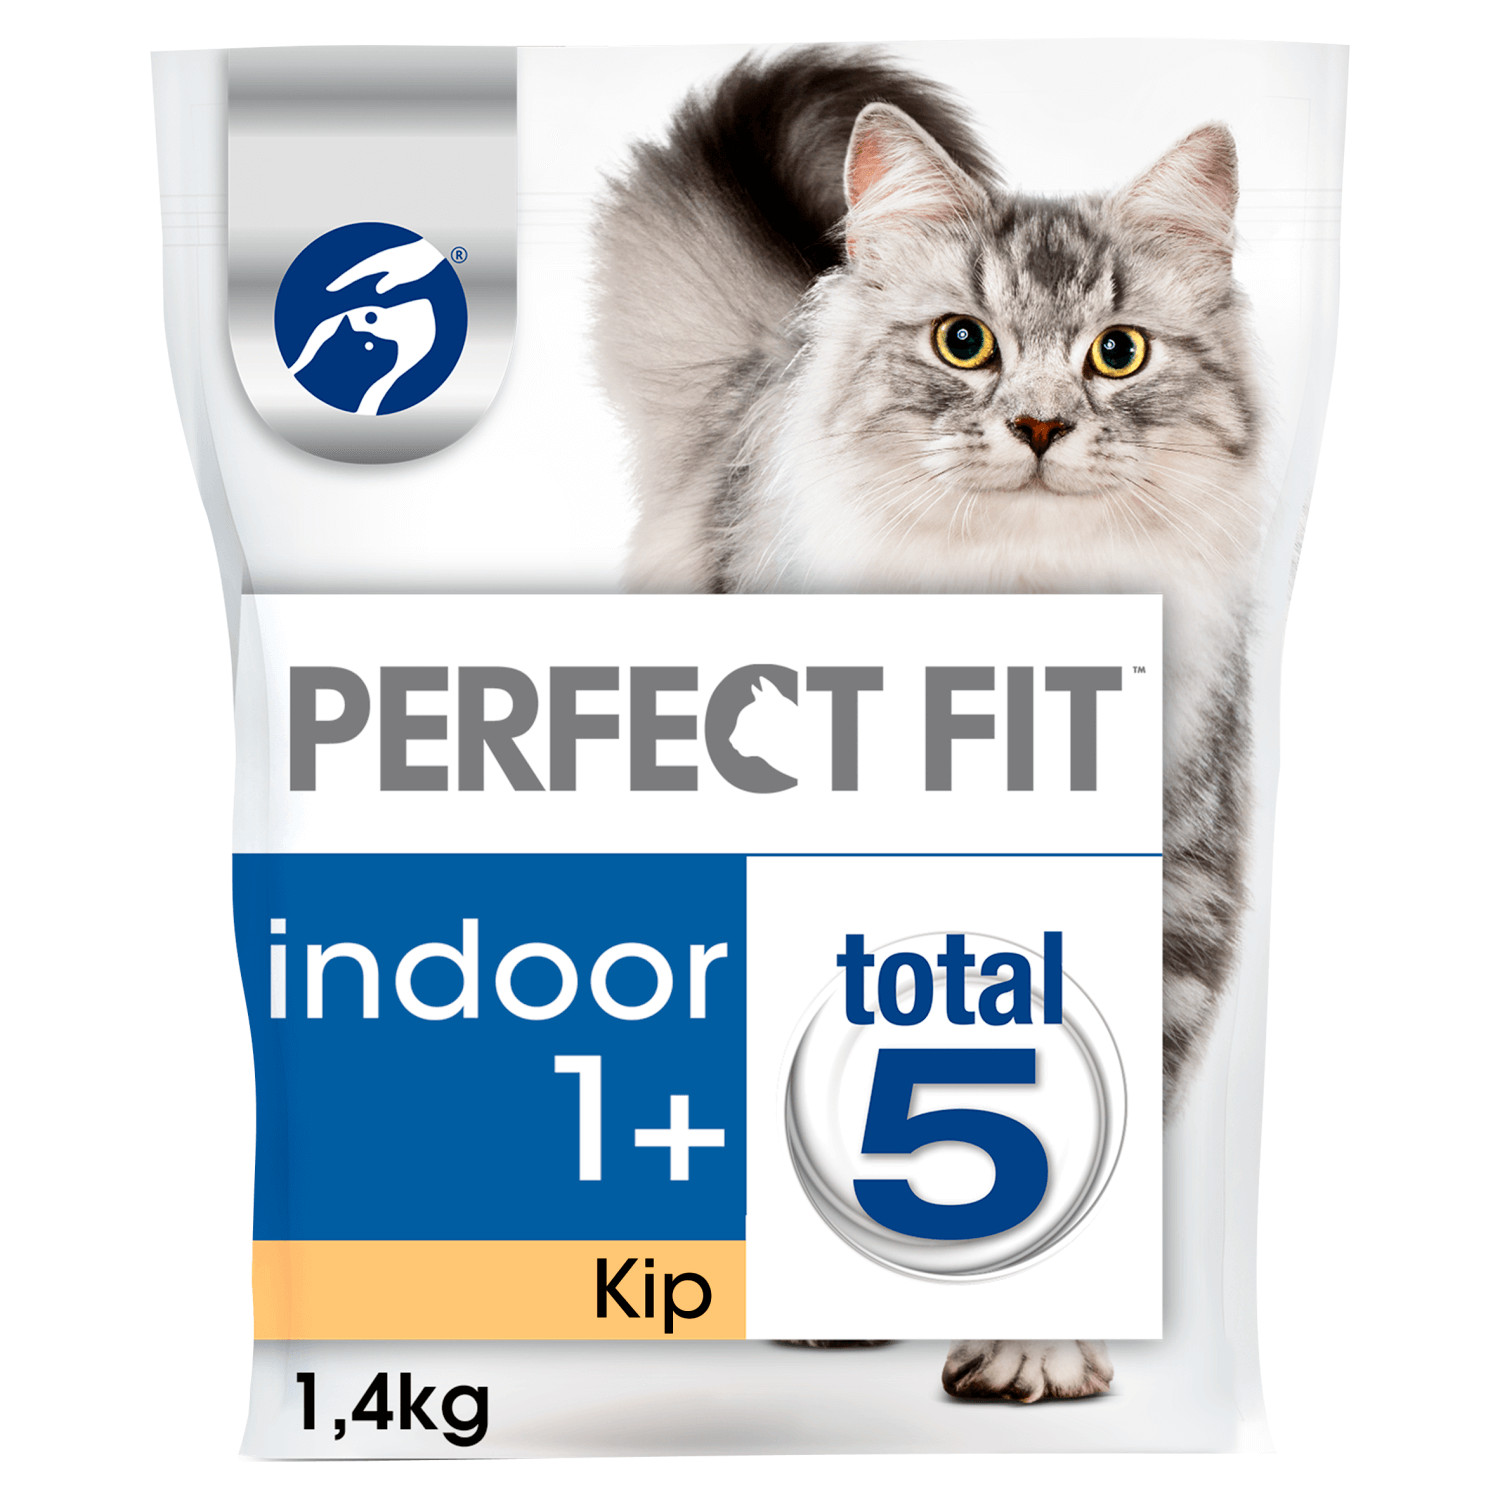 Overwinnen volwassen onvoorwaardelijk Perfect Fit Indoor 1+ met kip kattenvoer | Voordelig bij